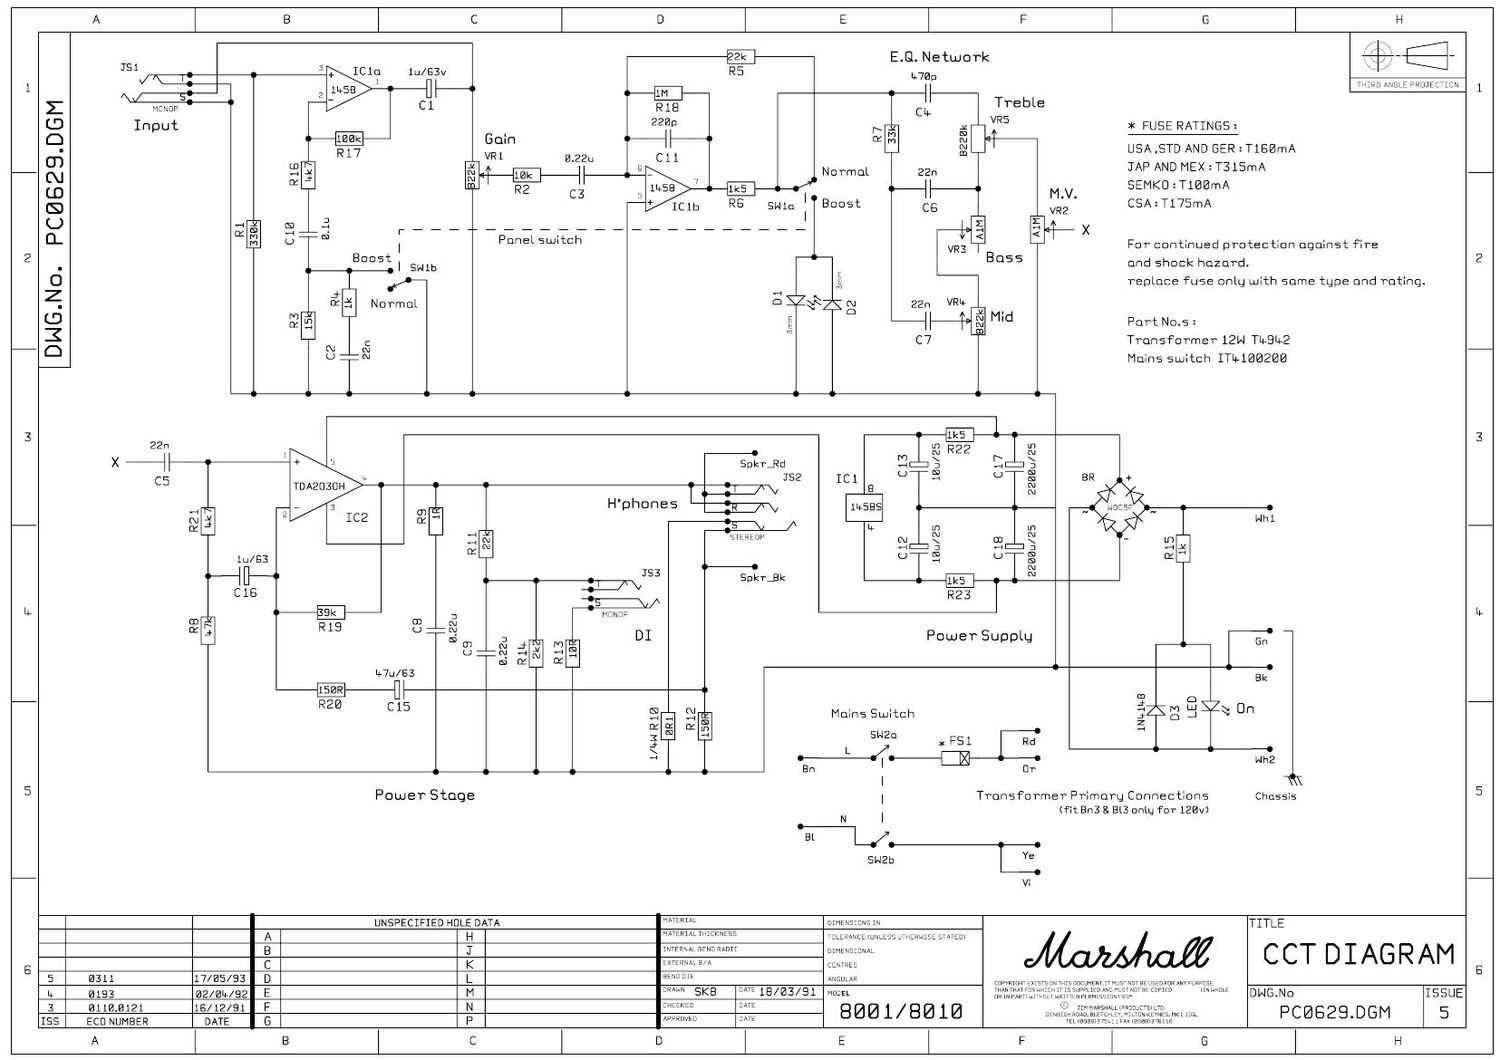 Marshall 8001 CCT Schematic